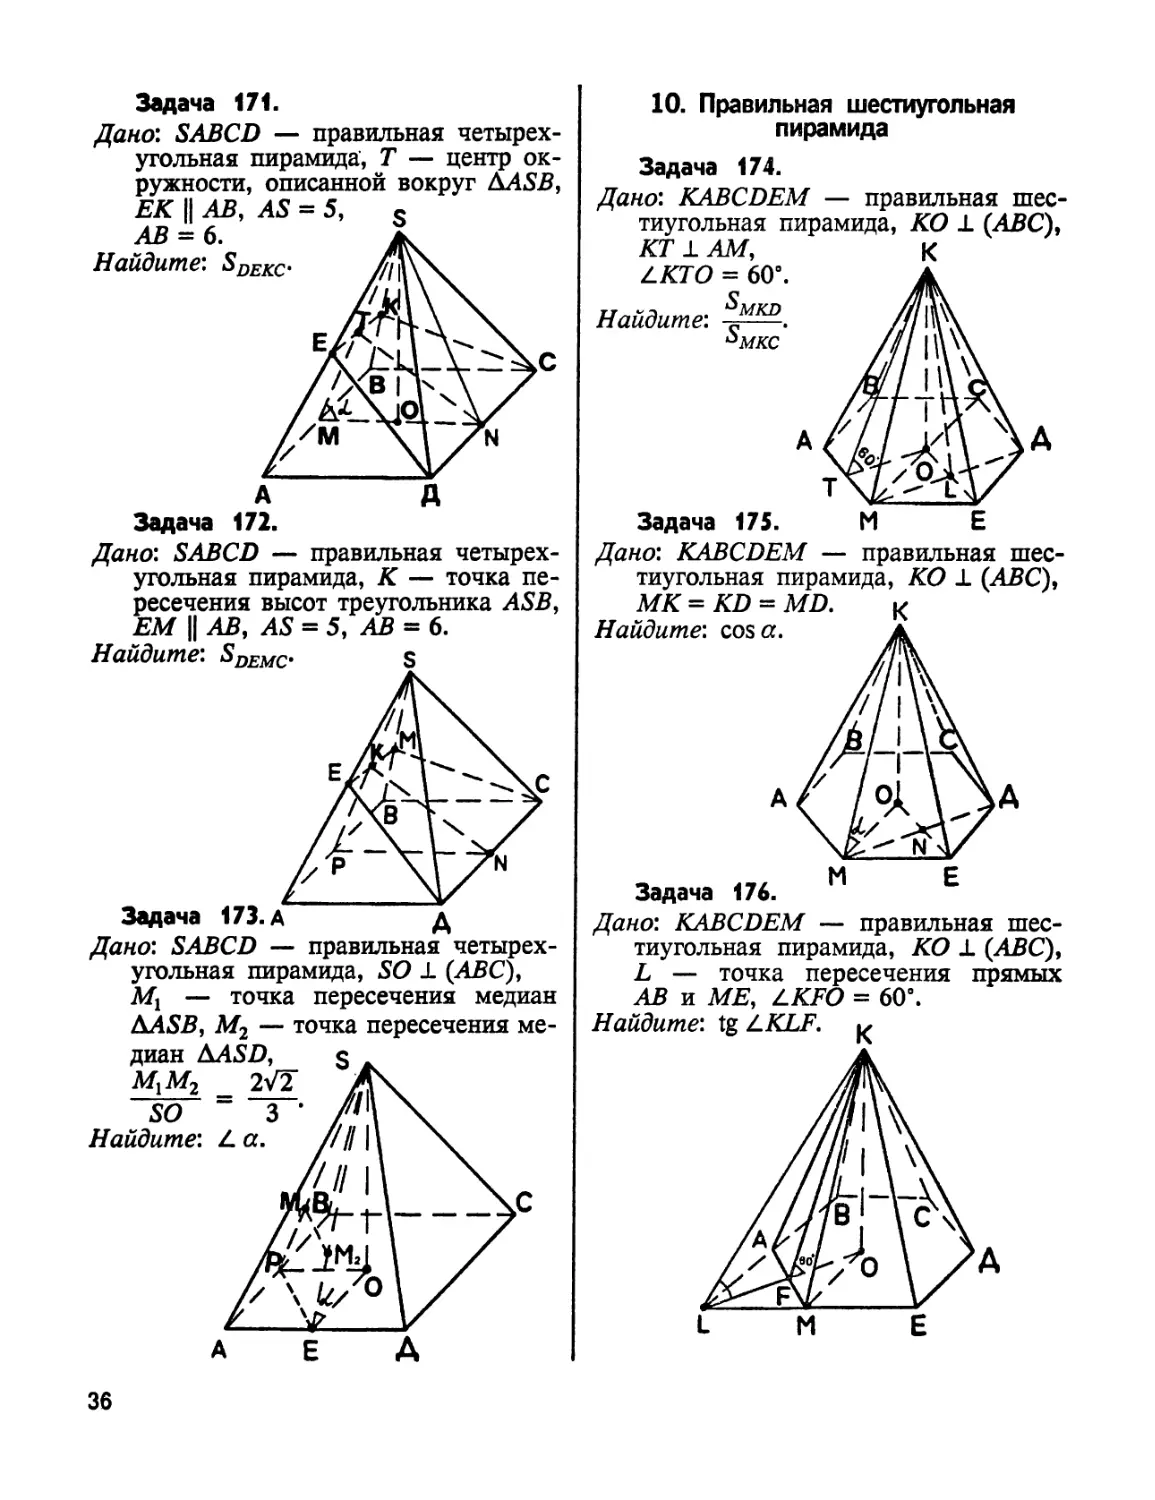 9. Правильная шестиугольная пирамида